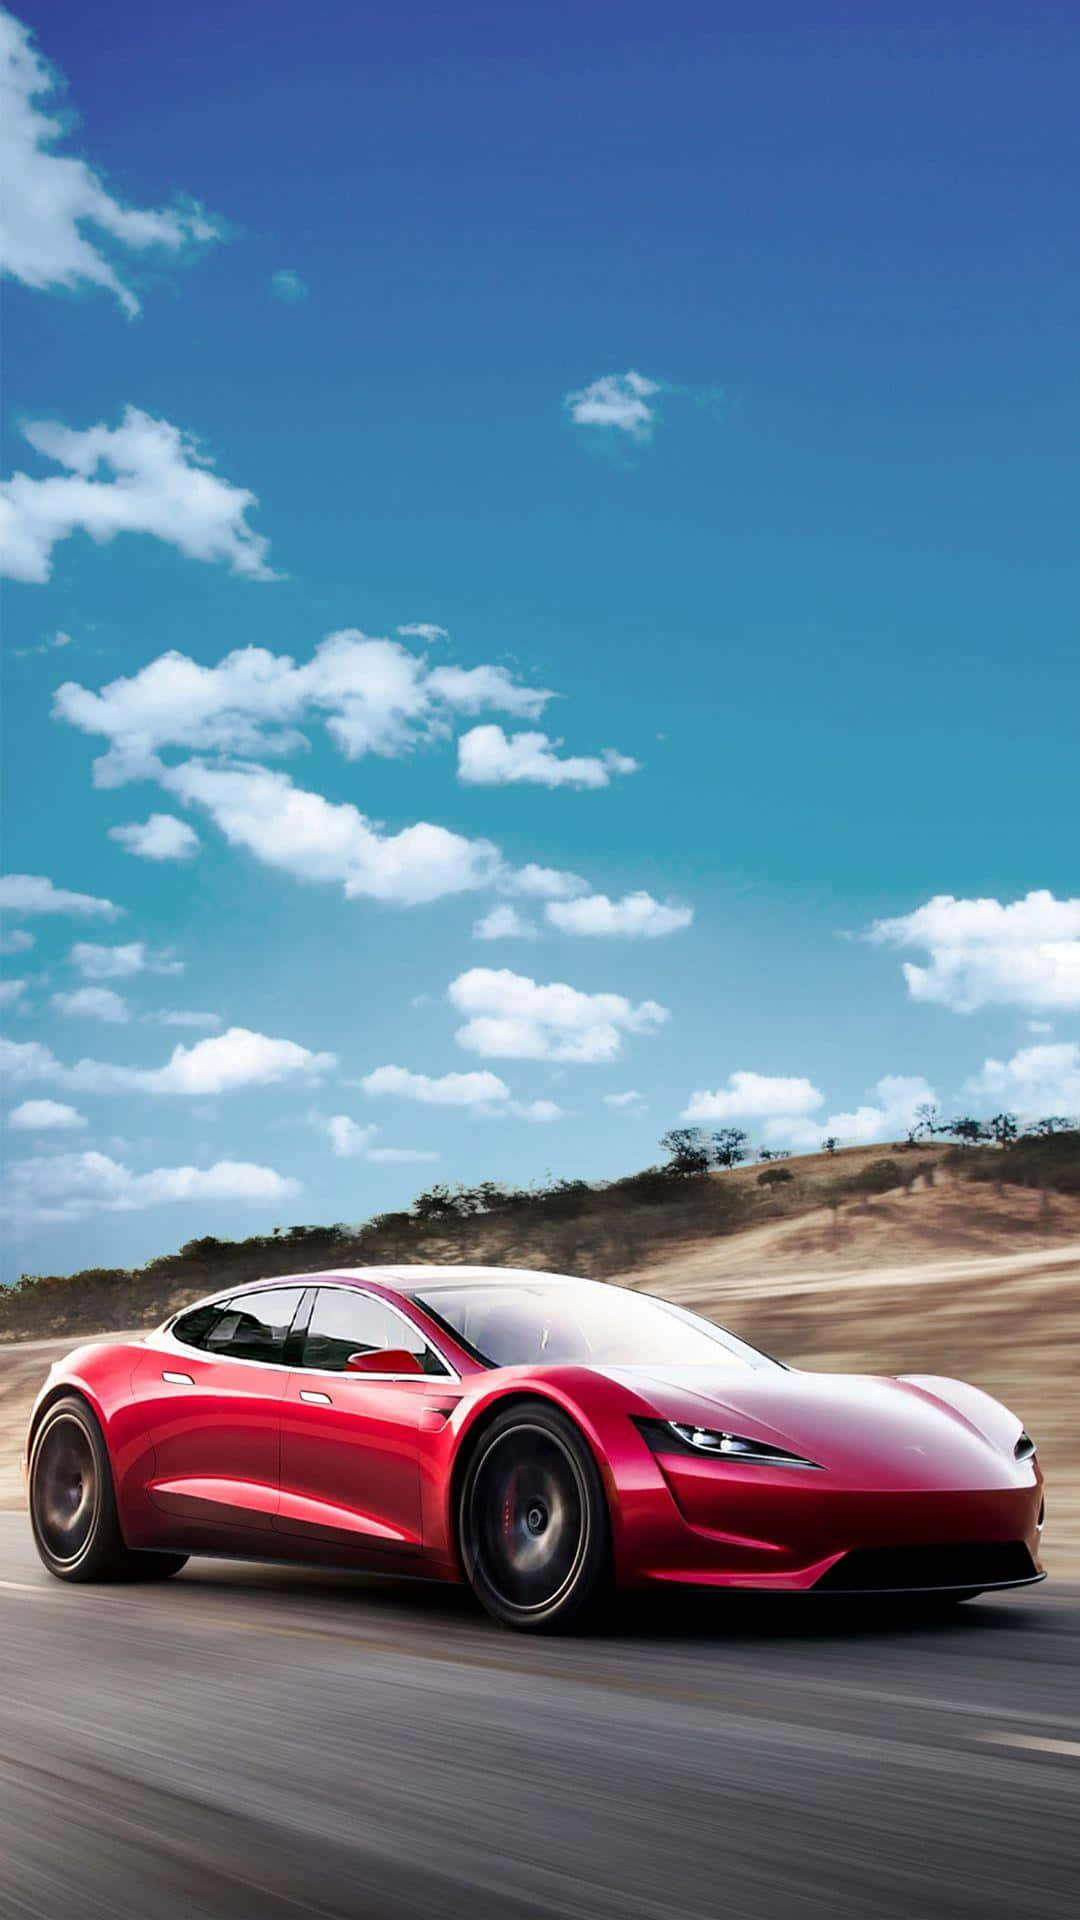 Holensie Sich Technologie Unterwegs Mit Dem Tesla Iphone. Wallpaper